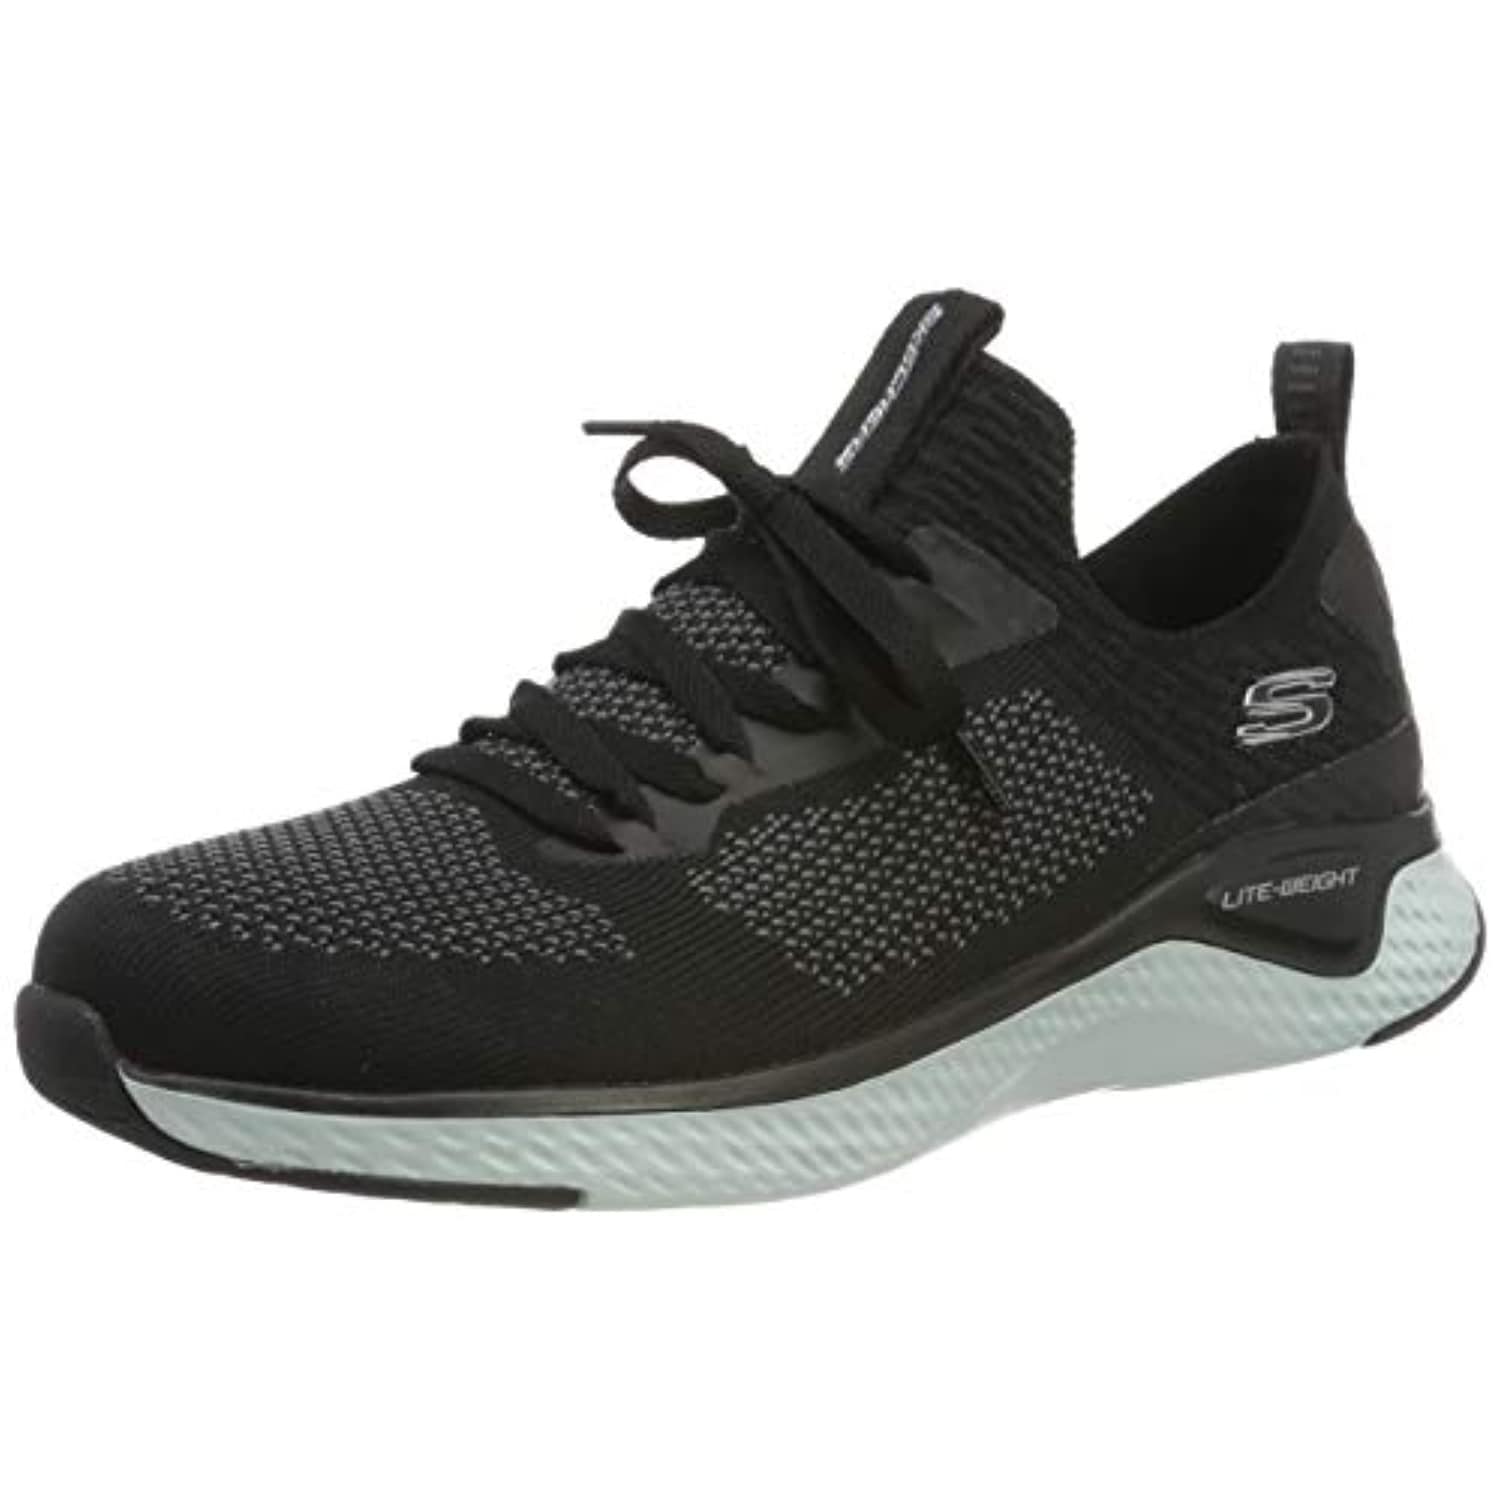 black mesh tennis shoes